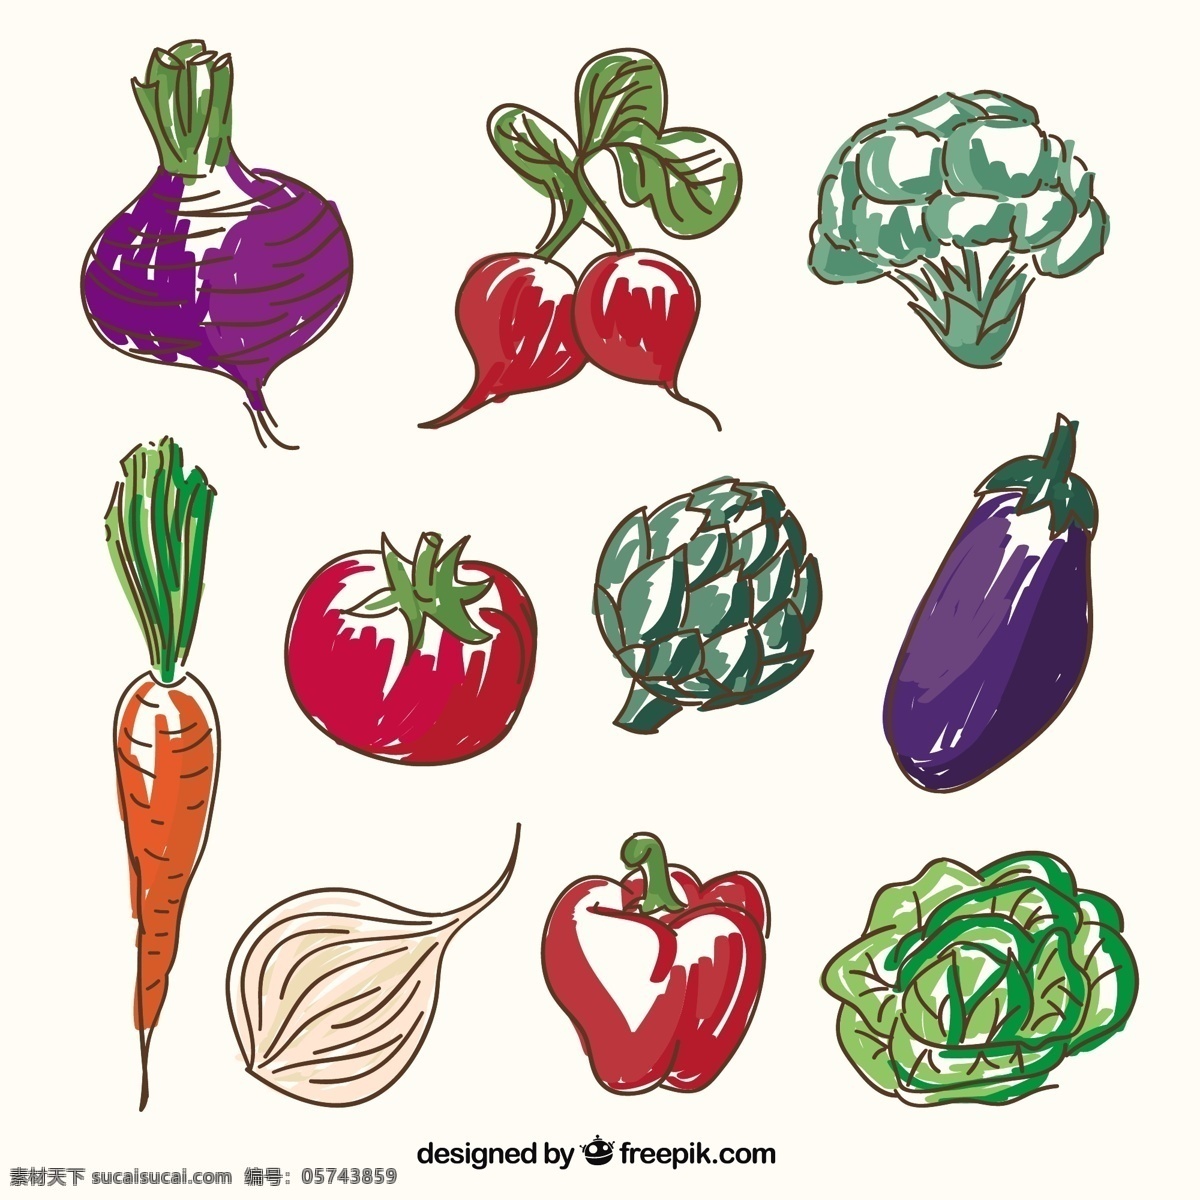 有机蔬菜图标 食品 卫生 蔬菜 有机 绘画 健康 番茄 辣椒 胡萝卜 生菜 粗略 西兰花 萝卜 茄子